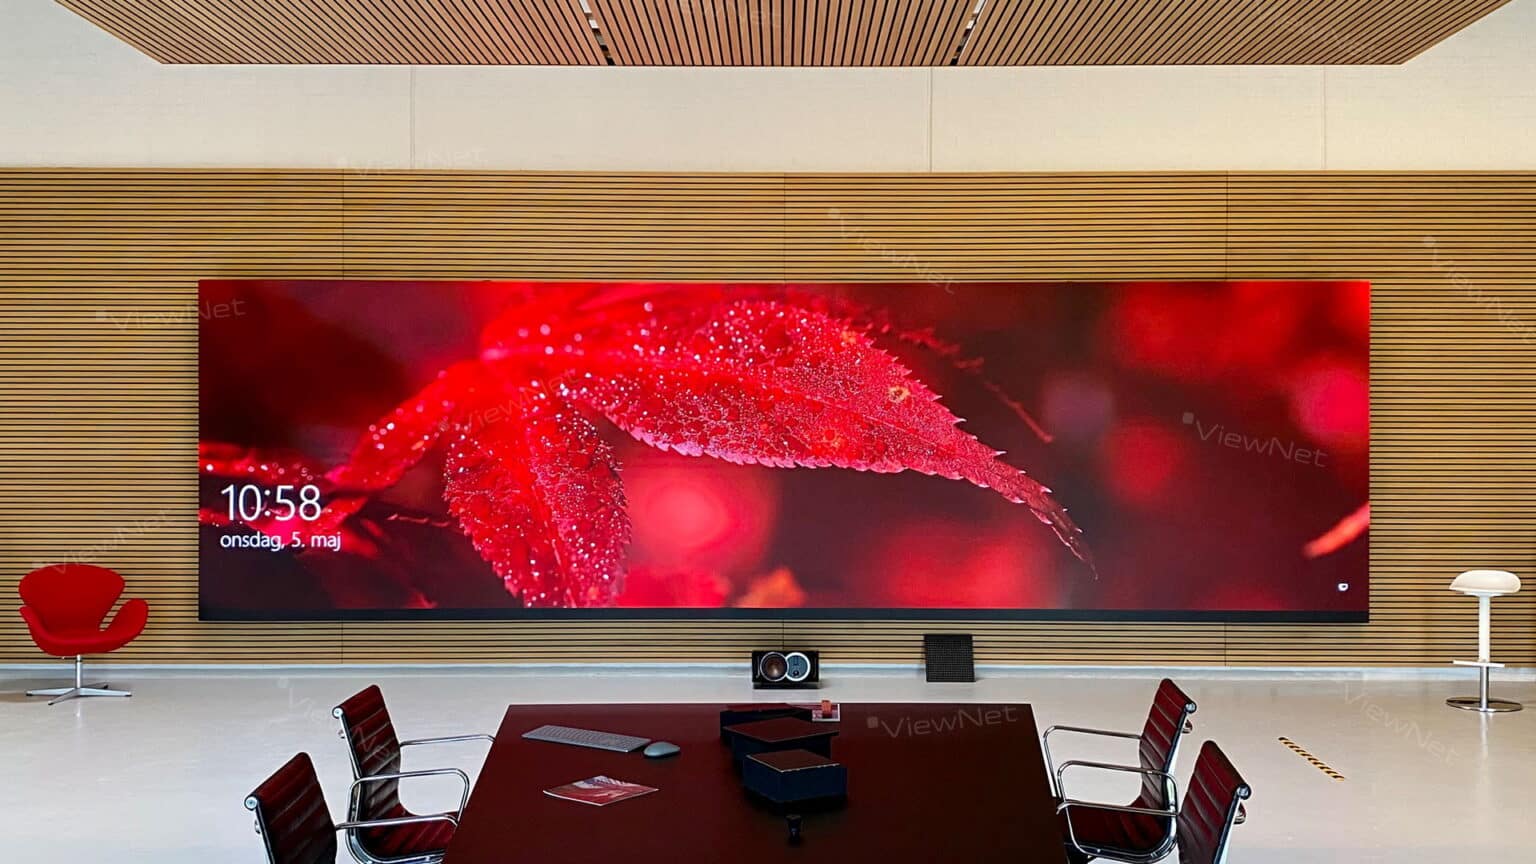 Besprechungsraum von Viewnet Systems mit großem LED-Bildschirm